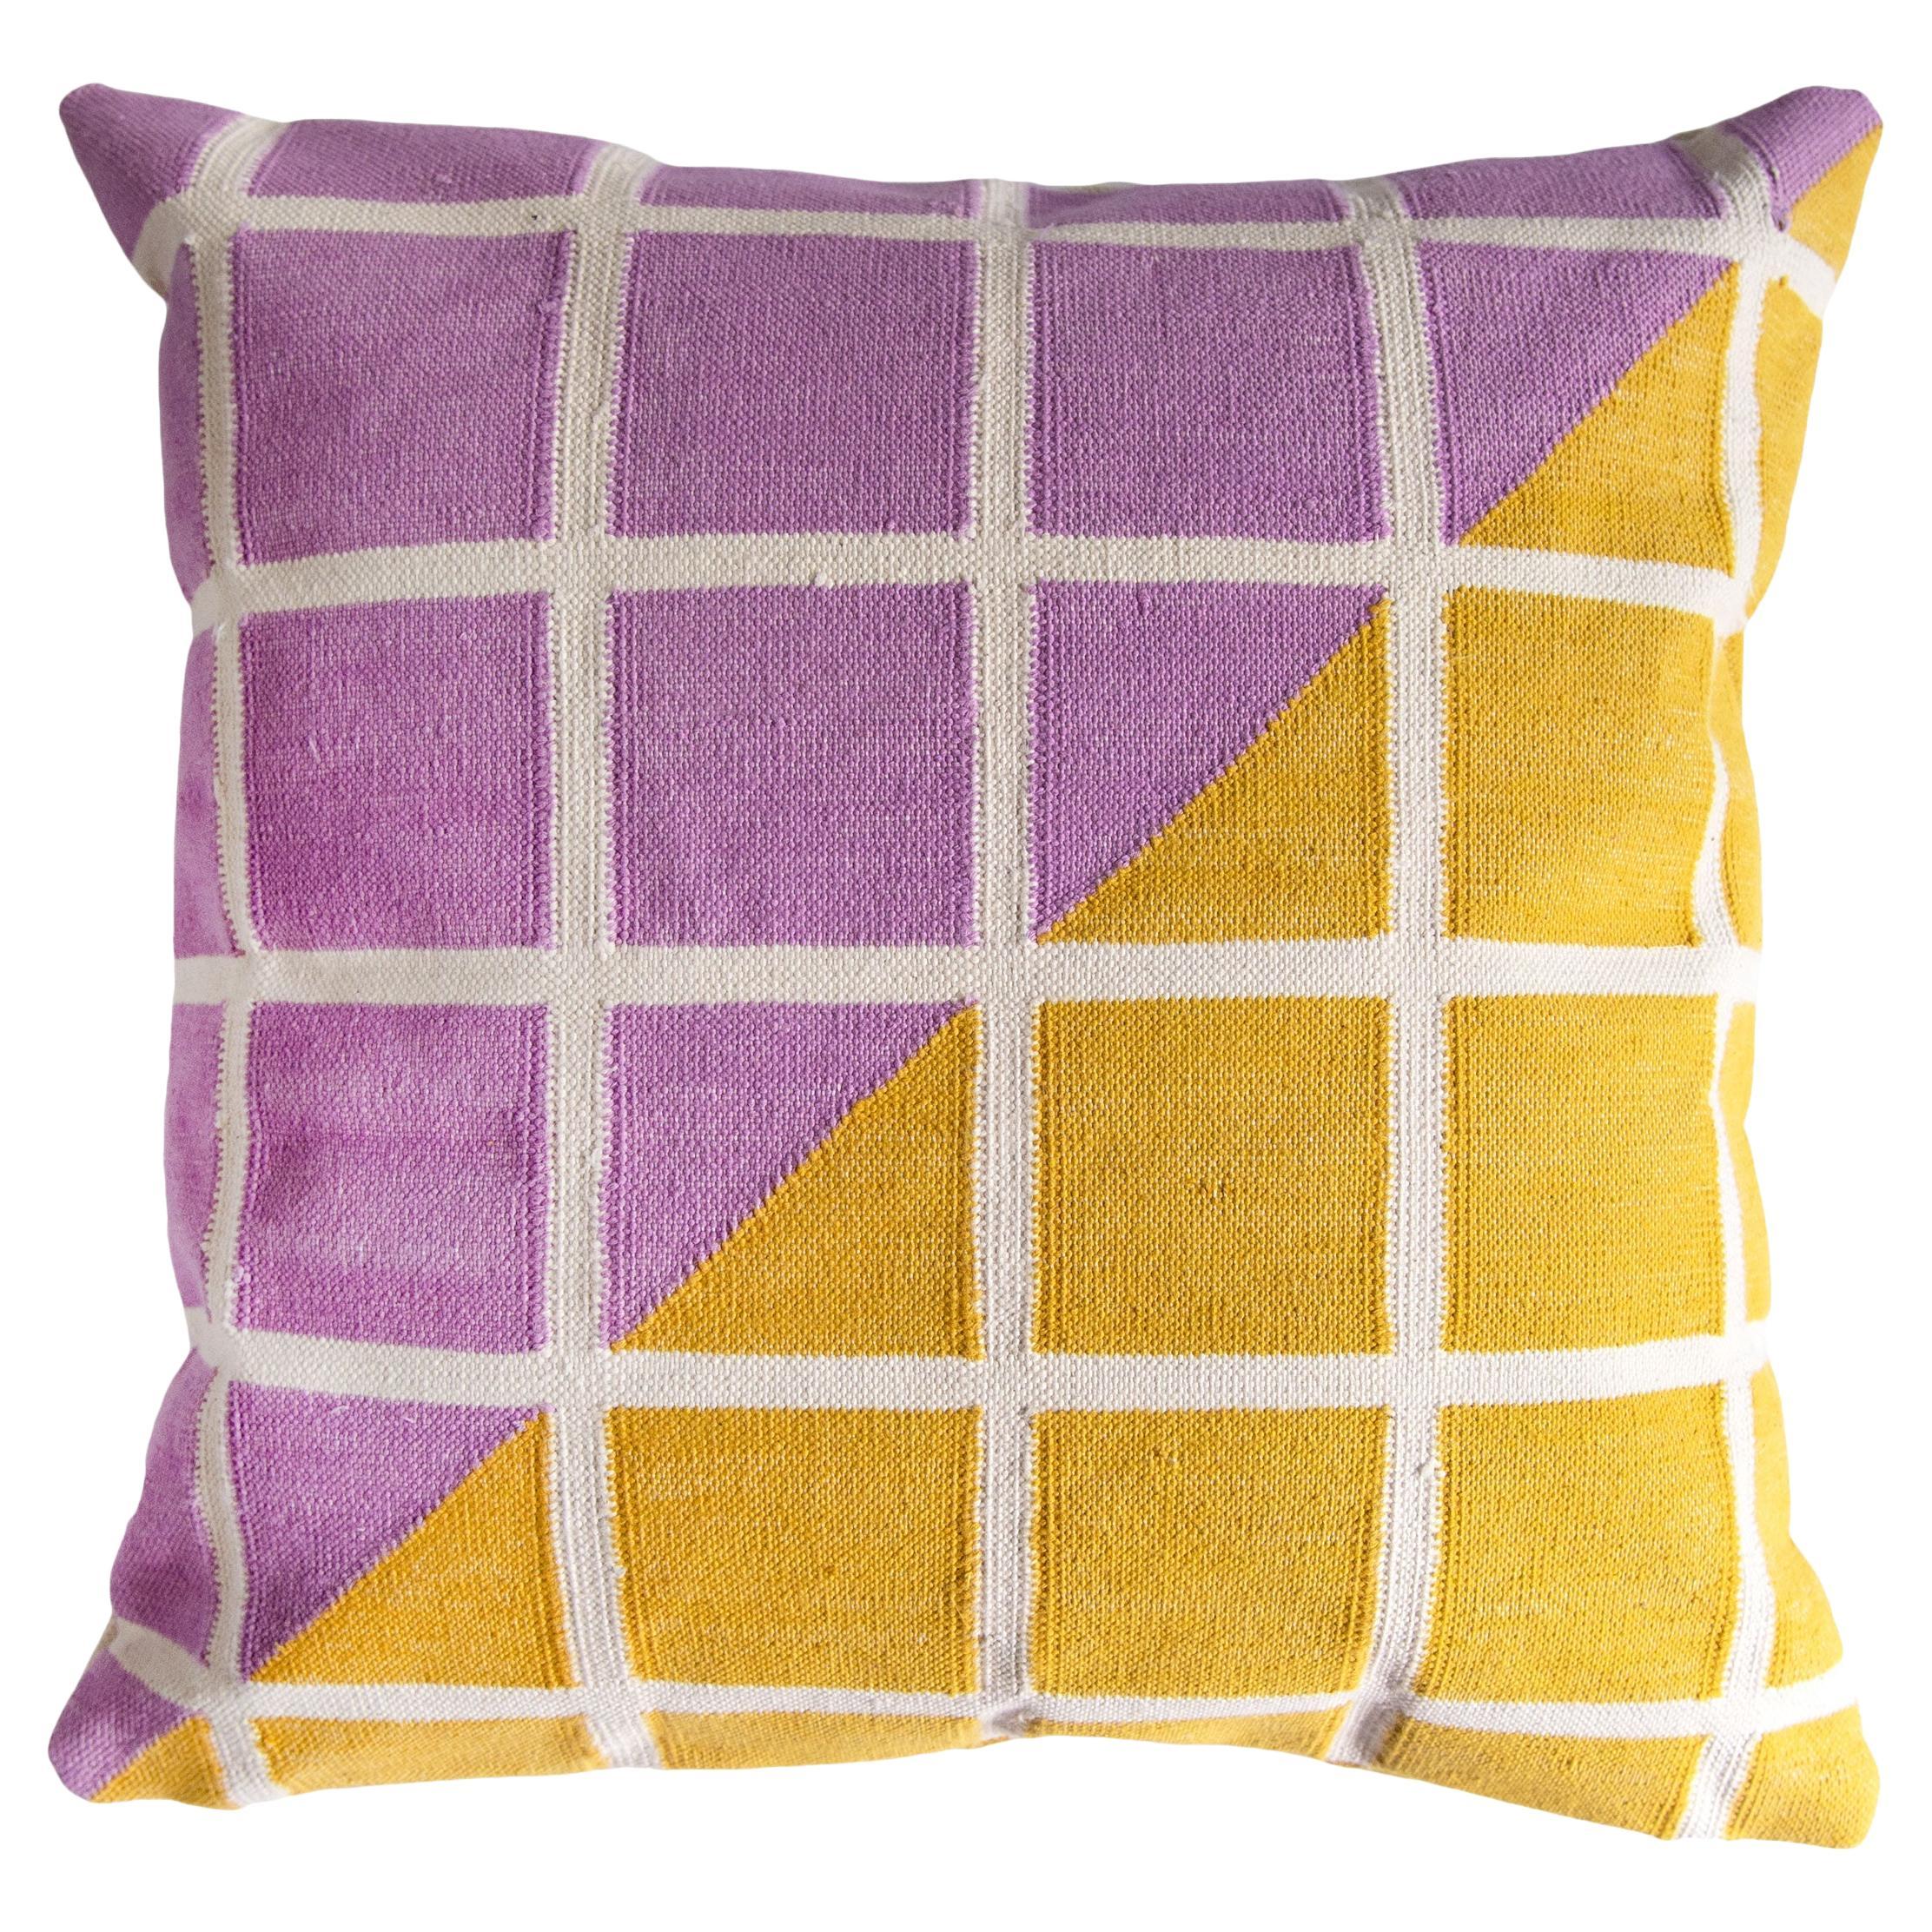 Geometric Grid Pillow, Reversible Diagonal